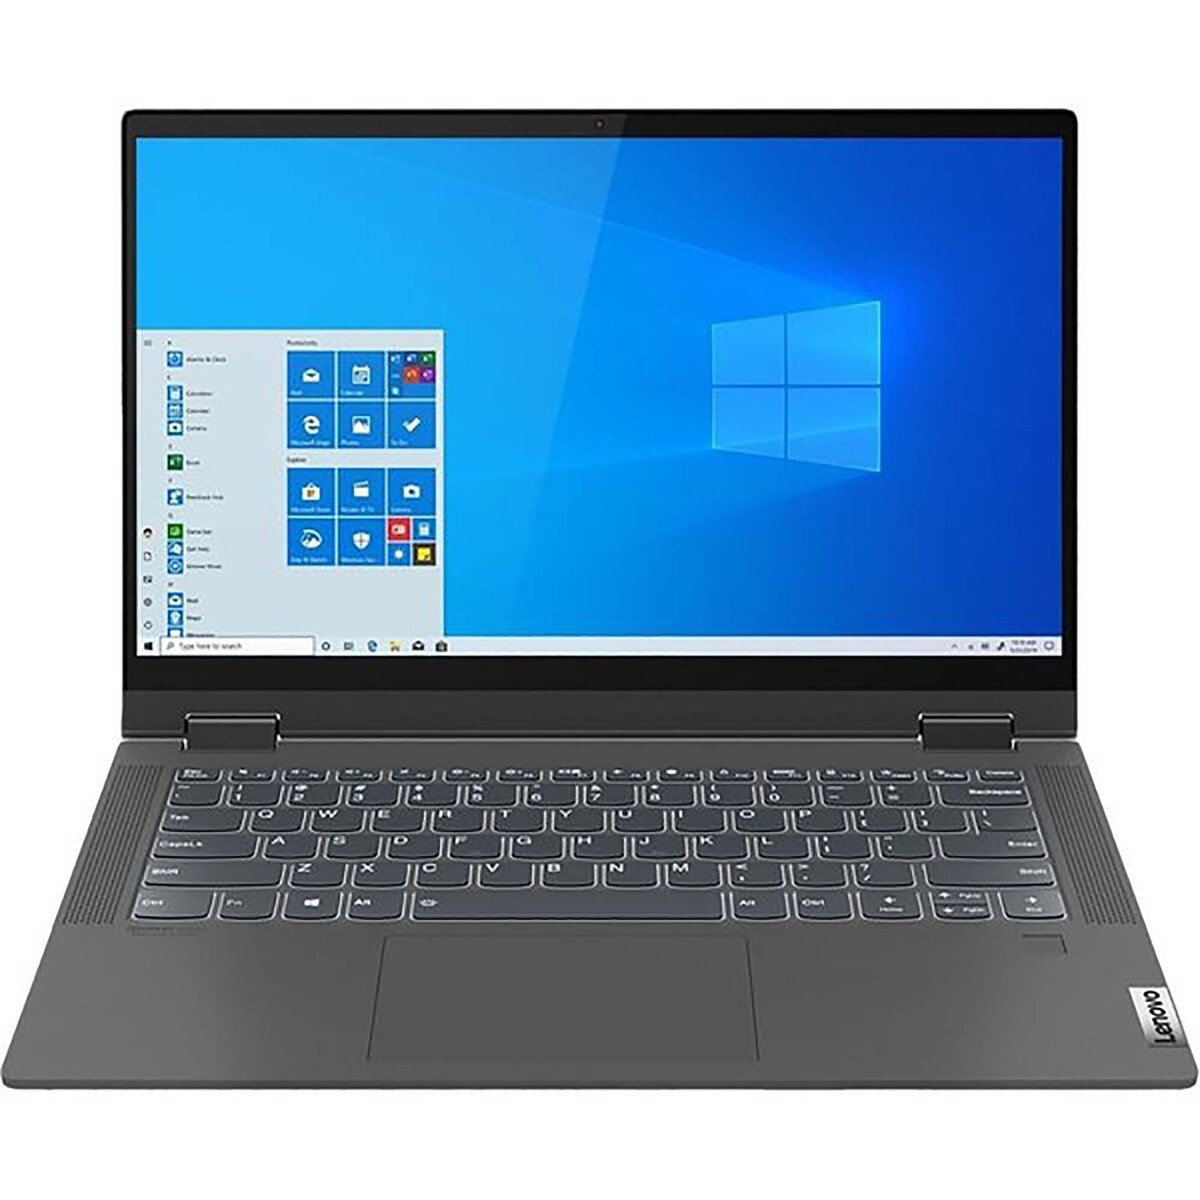 Lenovo IdeaPad Flex 5,2in1 Notebook(82HS00TTAX),Intel Core i5-1135G7,8GB RAM,512GB SSD, 14.0"FHD,Windows 11,Graphite Grey,English-Arabic Keyboard